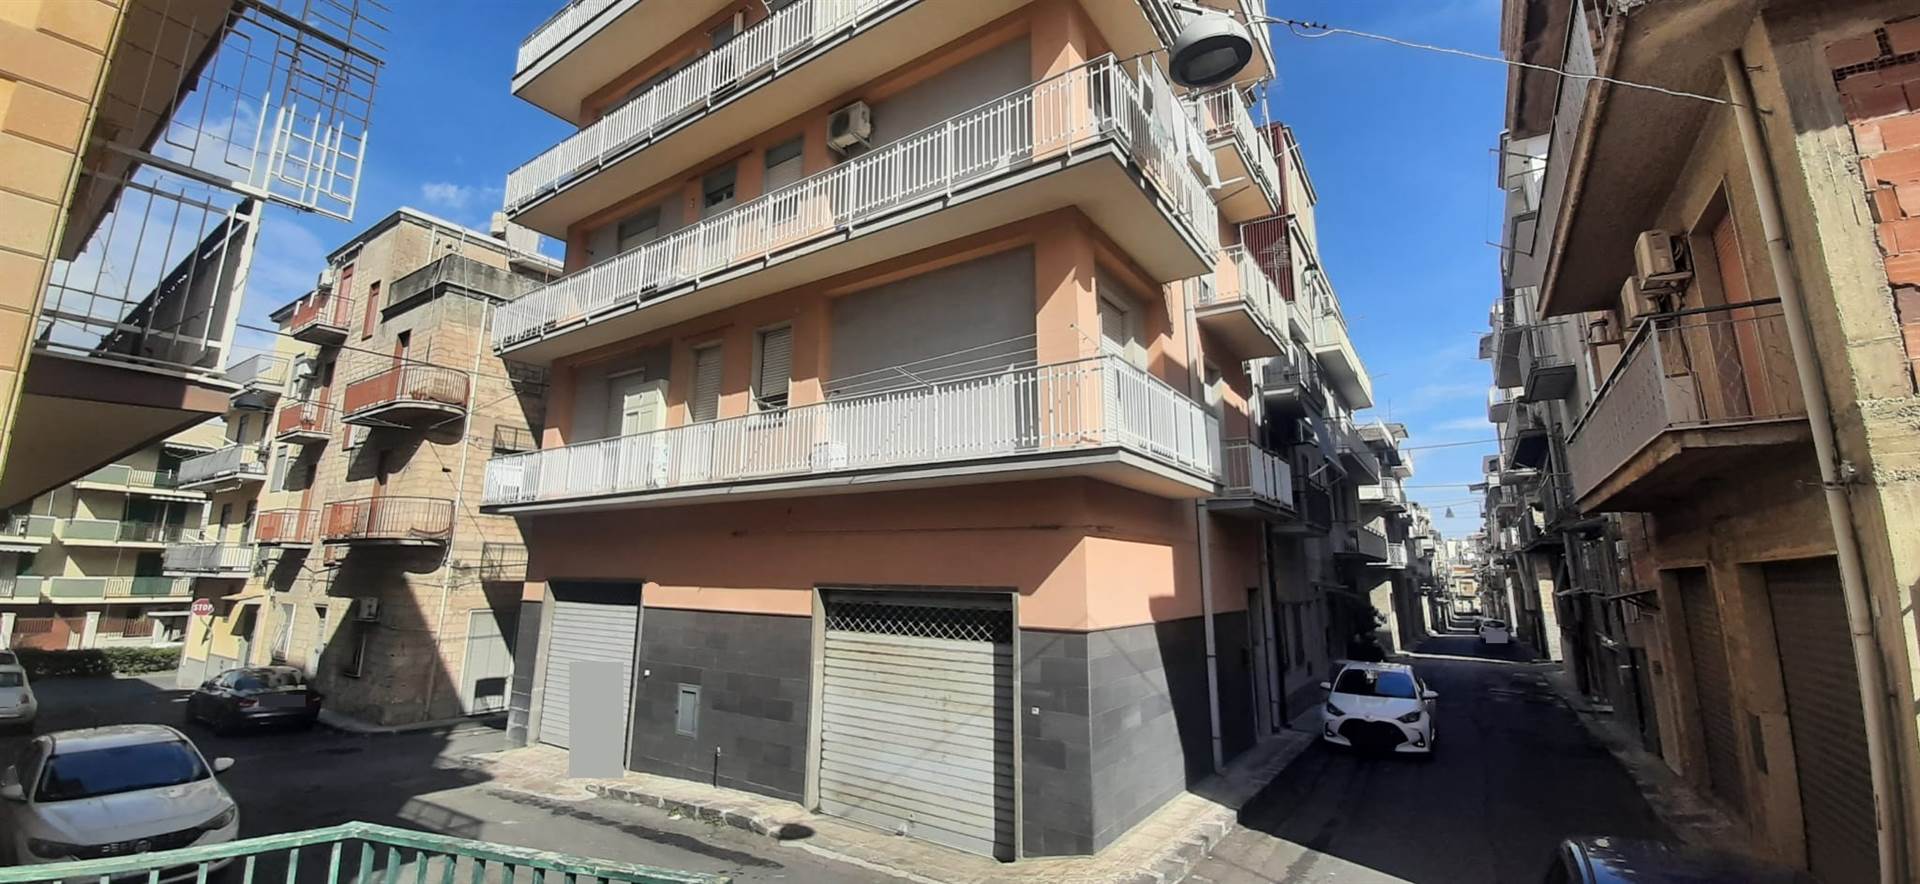 Appartamento in vendita a Lentini, 4 locali, zona Località: CENTRO, prezzo € 70.000 | PortaleAgenzieImmobiliari.it